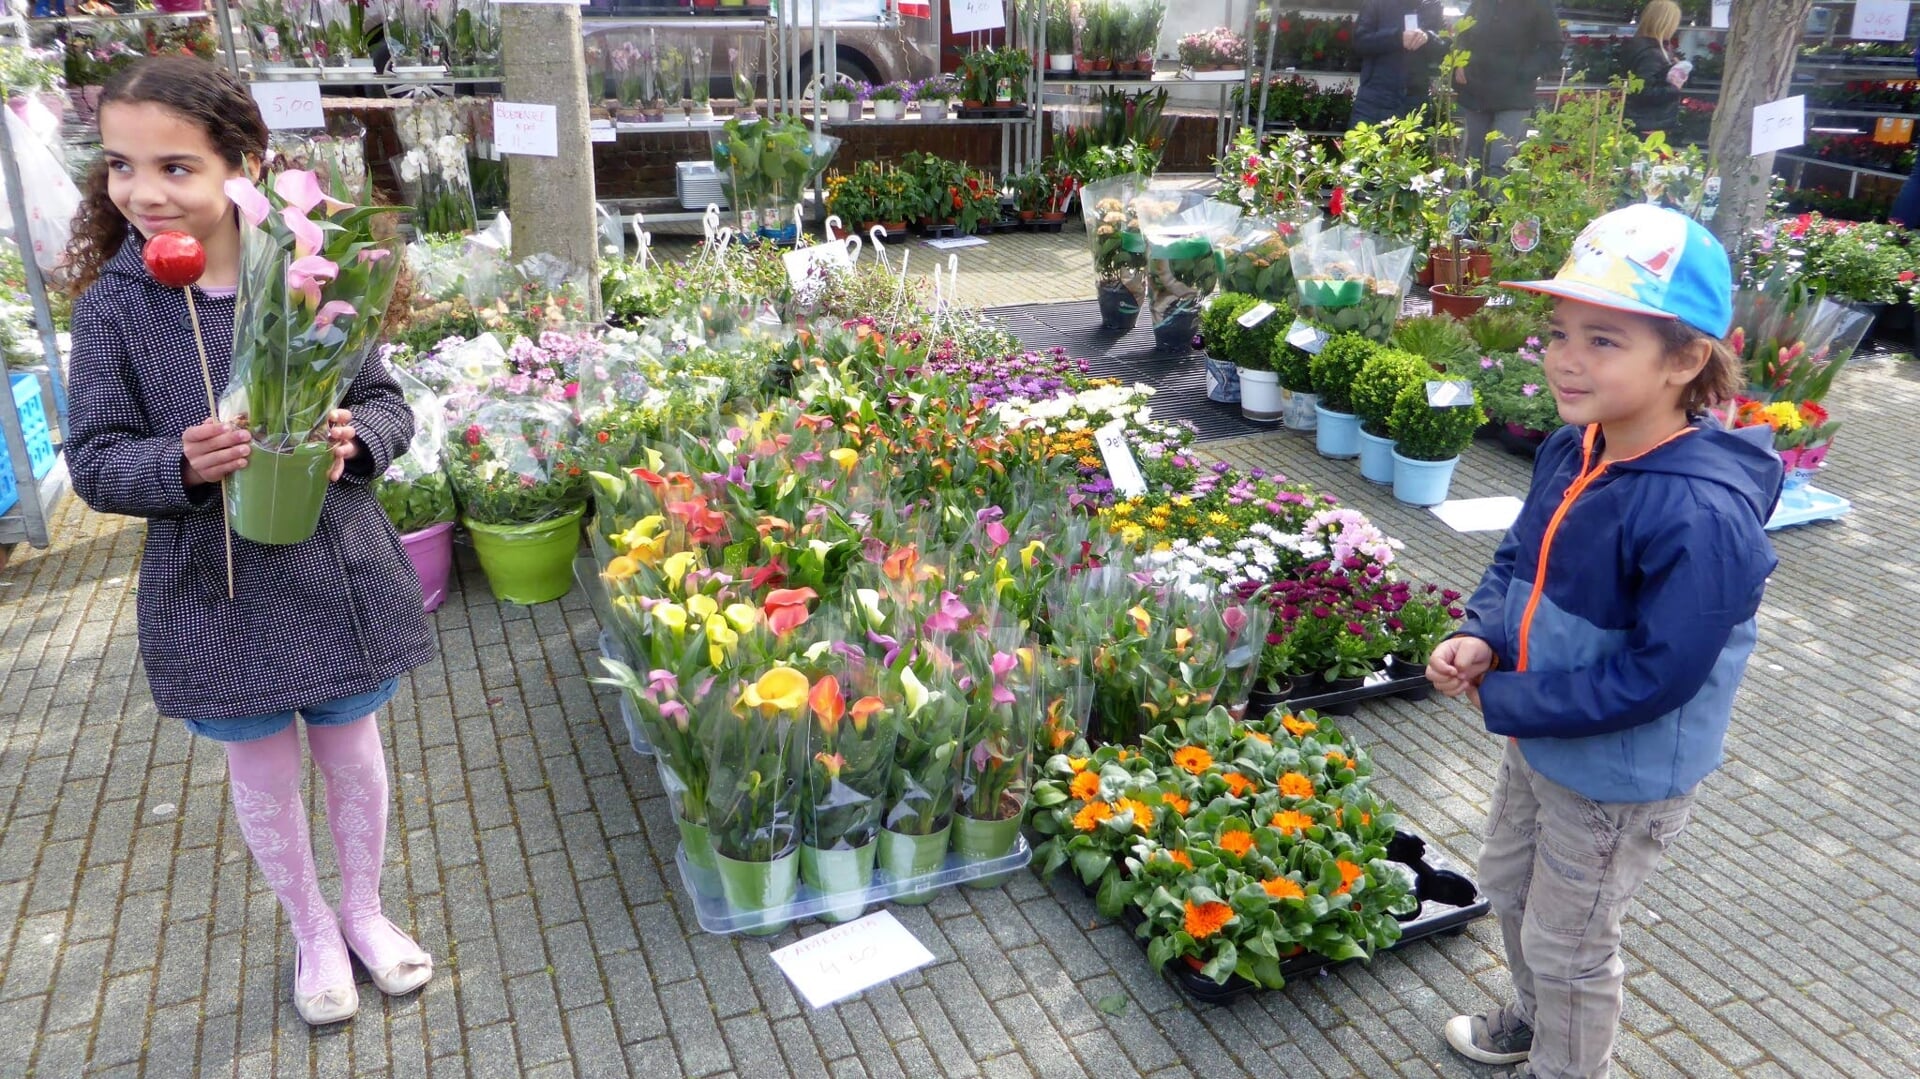 De plantenmarkt op het Plein vindt elk jaar plaats.